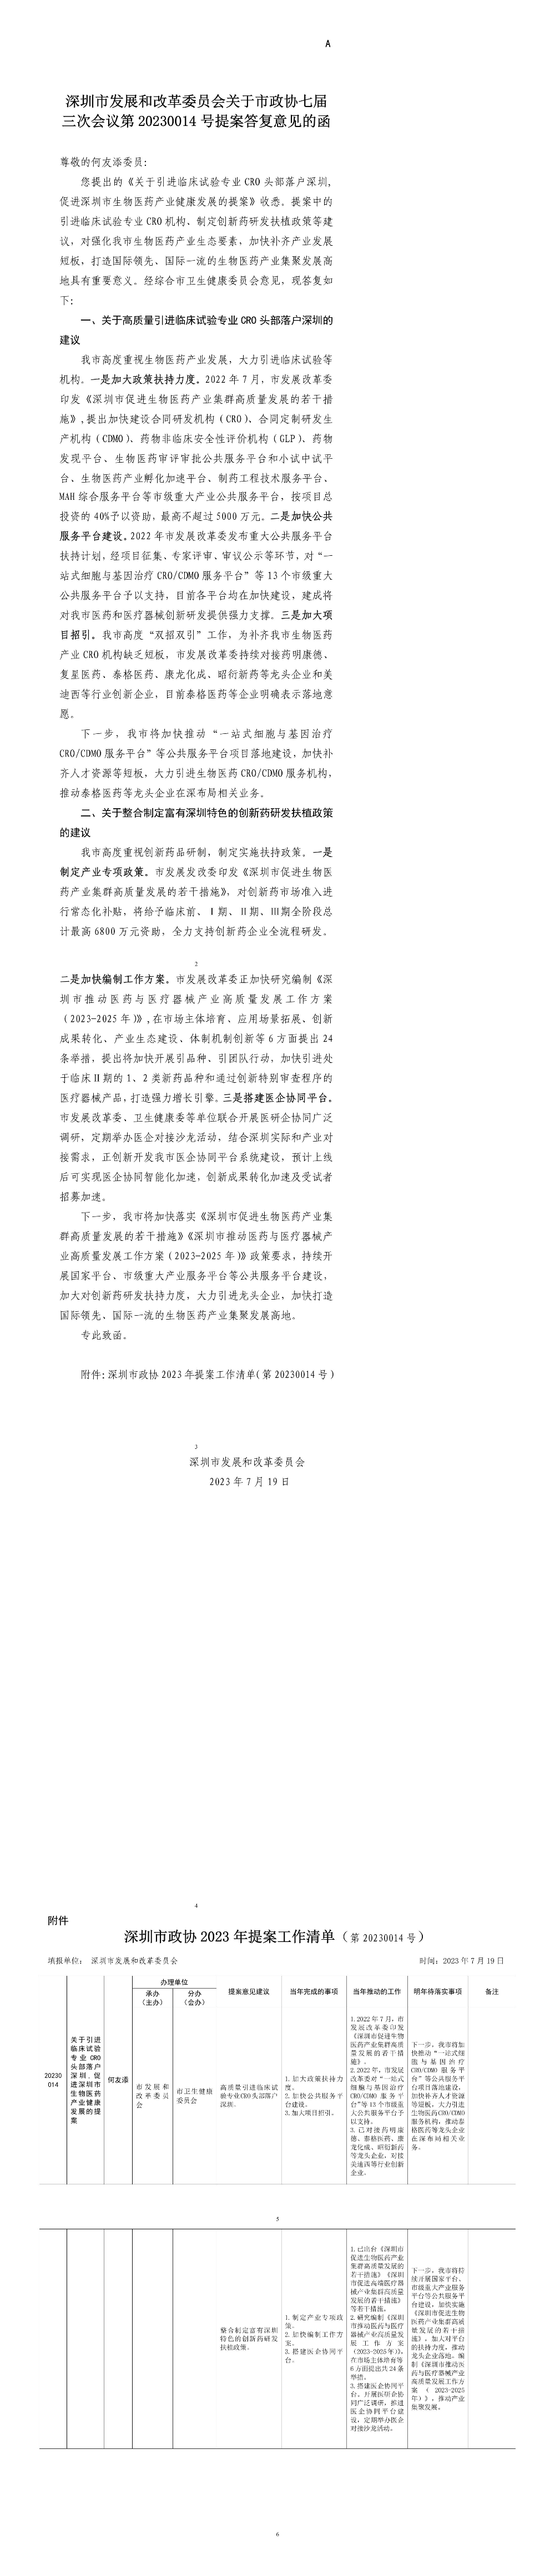 深圳市发展和改革委员会关于市政协七届三次会议第20230014号提案答复意见的函.jpg